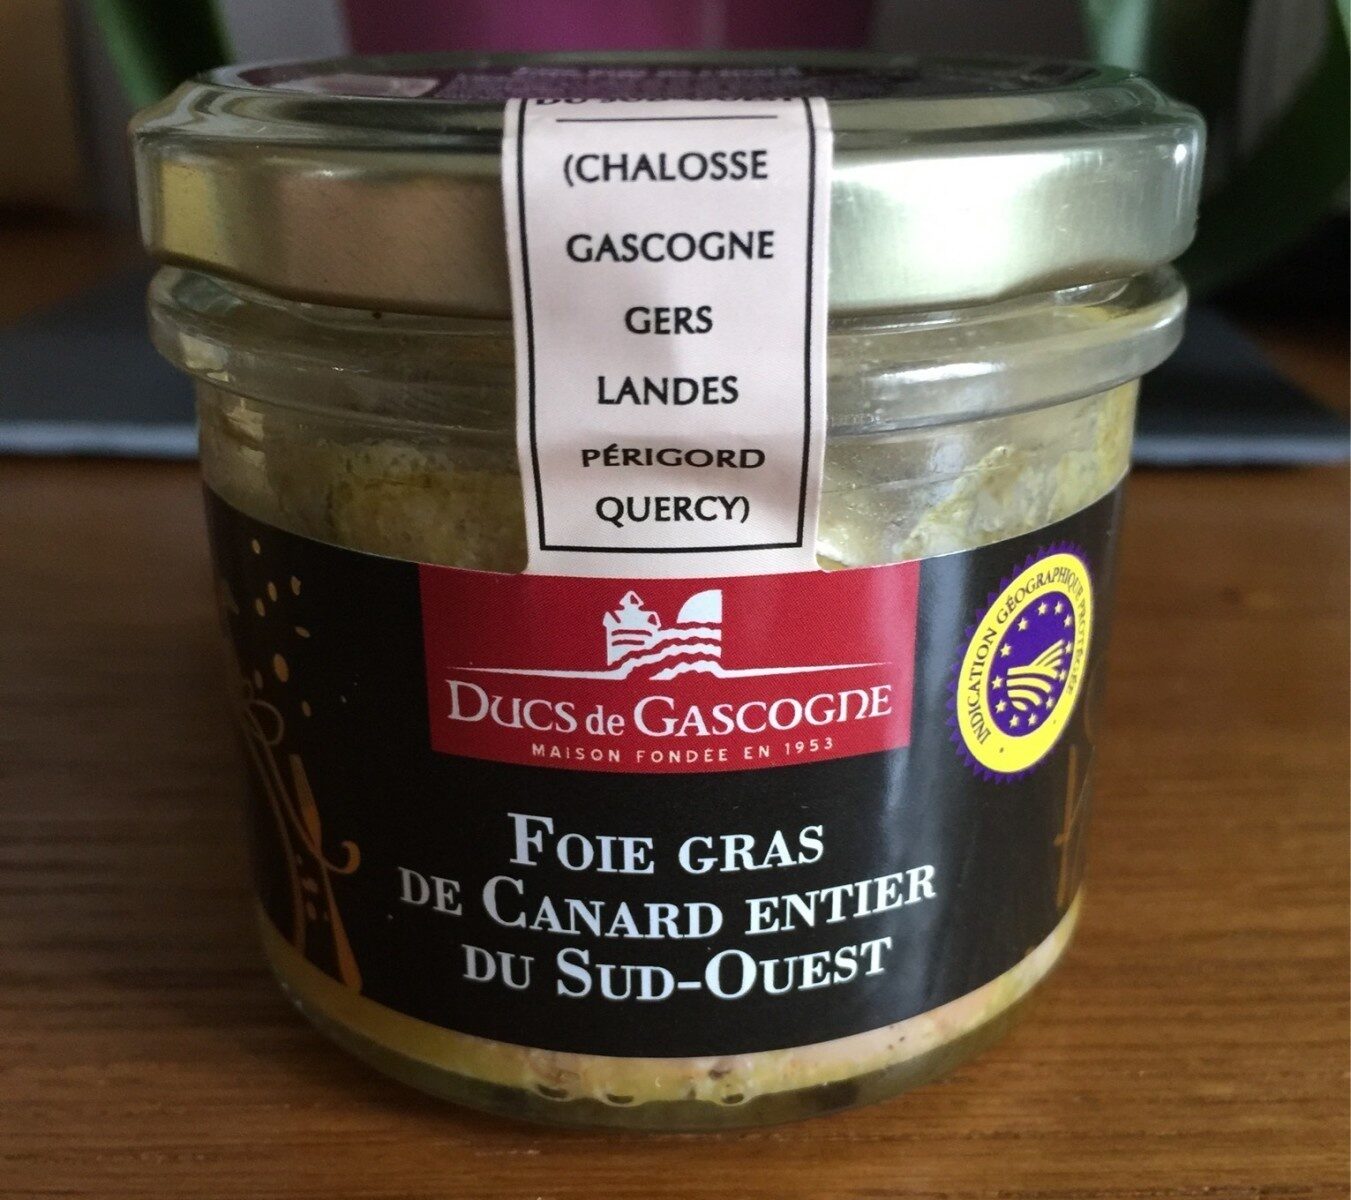 Foie gras de cabard entier du dud ouest - Produit